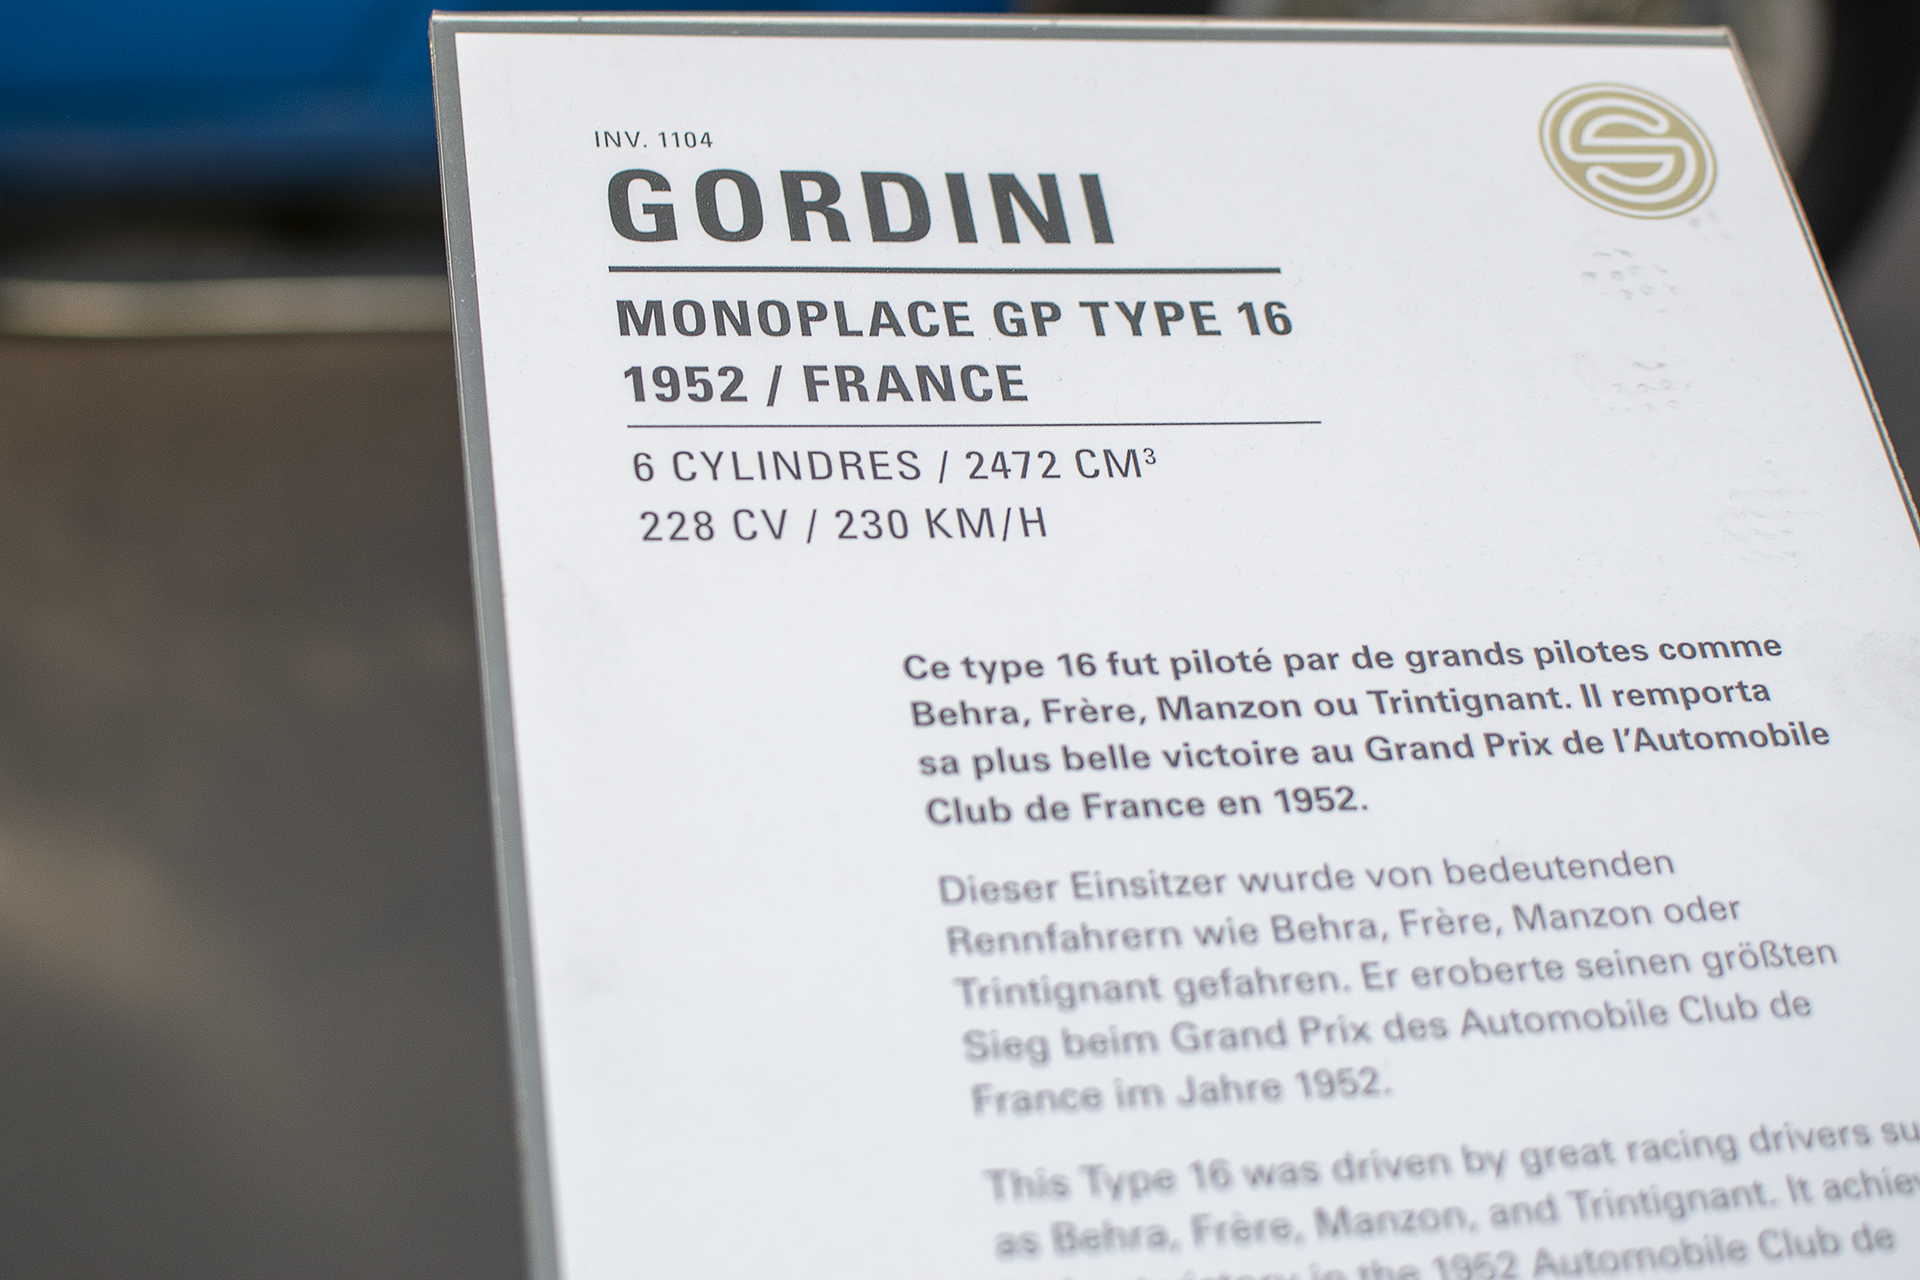   Gordini type 16 monoplace GP 1952 details - Cité de l'automobile, Collection Schlumpf, Mulhouse, 2020